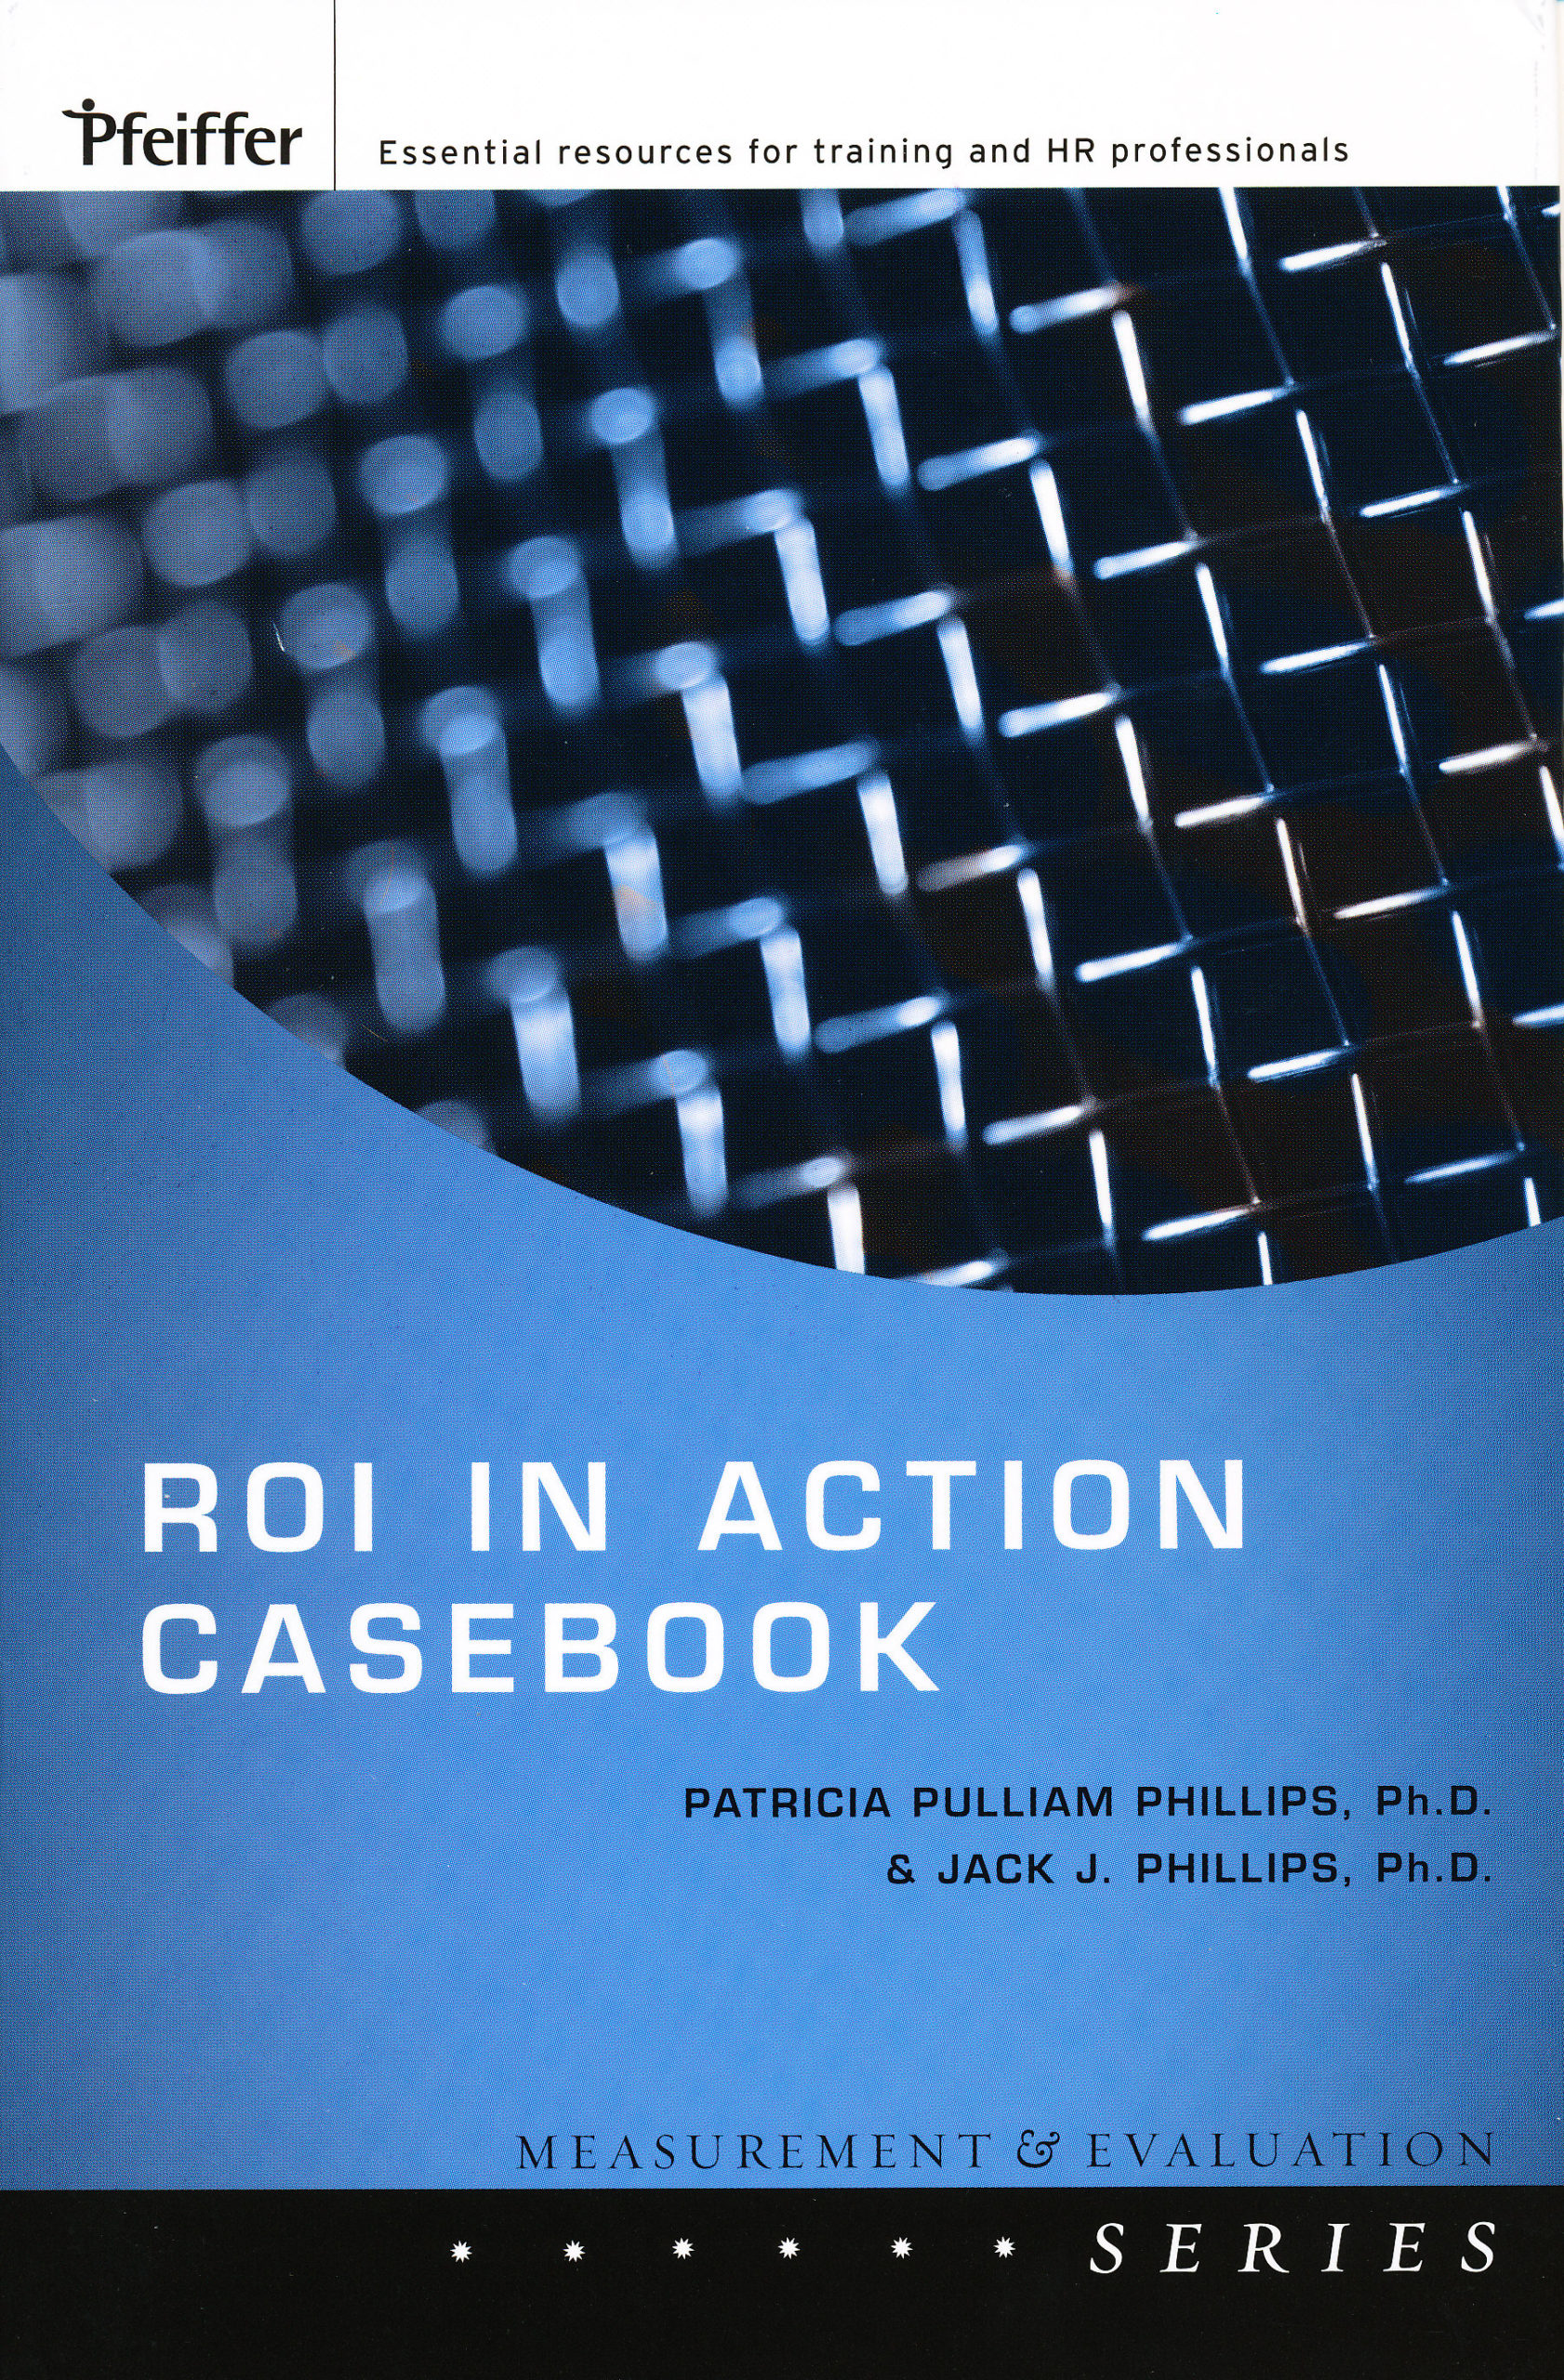 ROI Casebook (2008) - ROI Institute